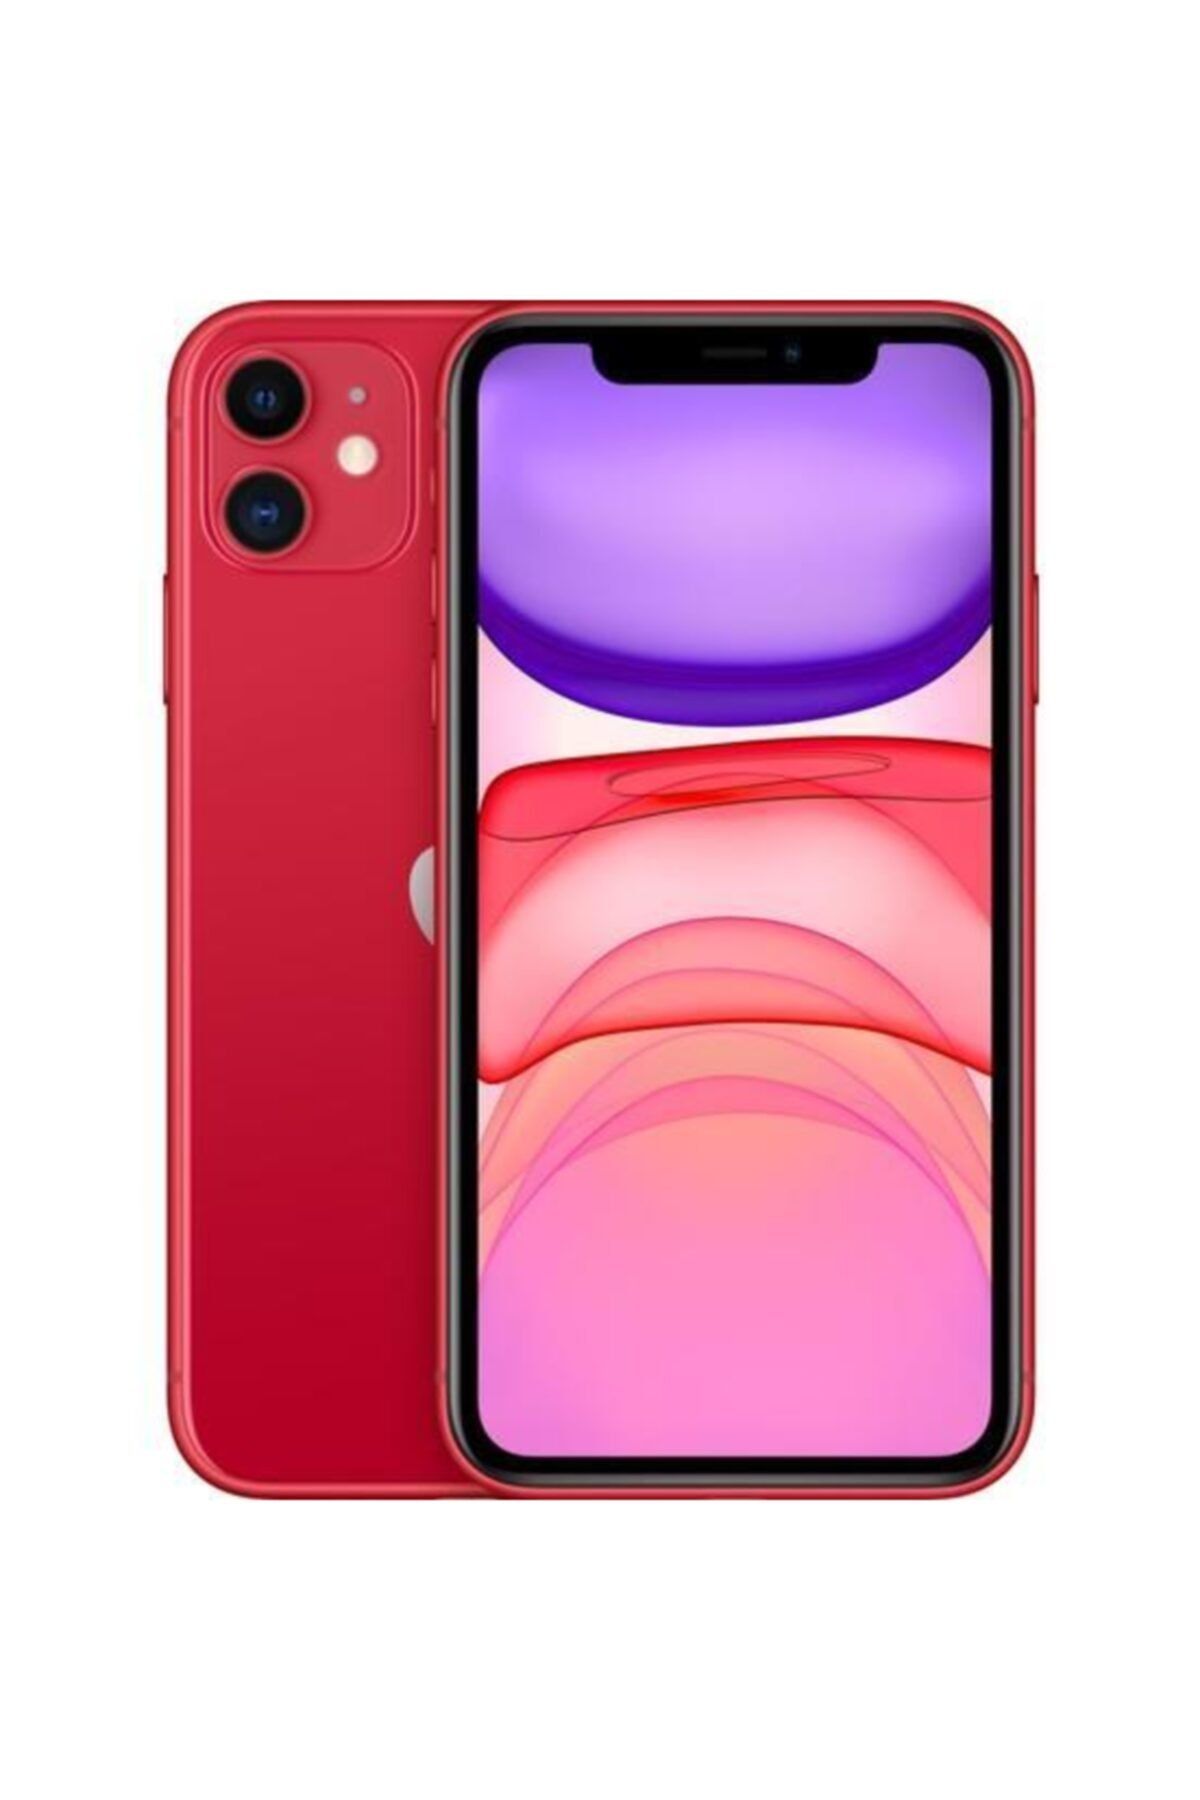 Apple iPhone 11 64 GB Kırmızı Cep Telefonu (Apple Türkiye Garantili) Aksesuarlı Kutu